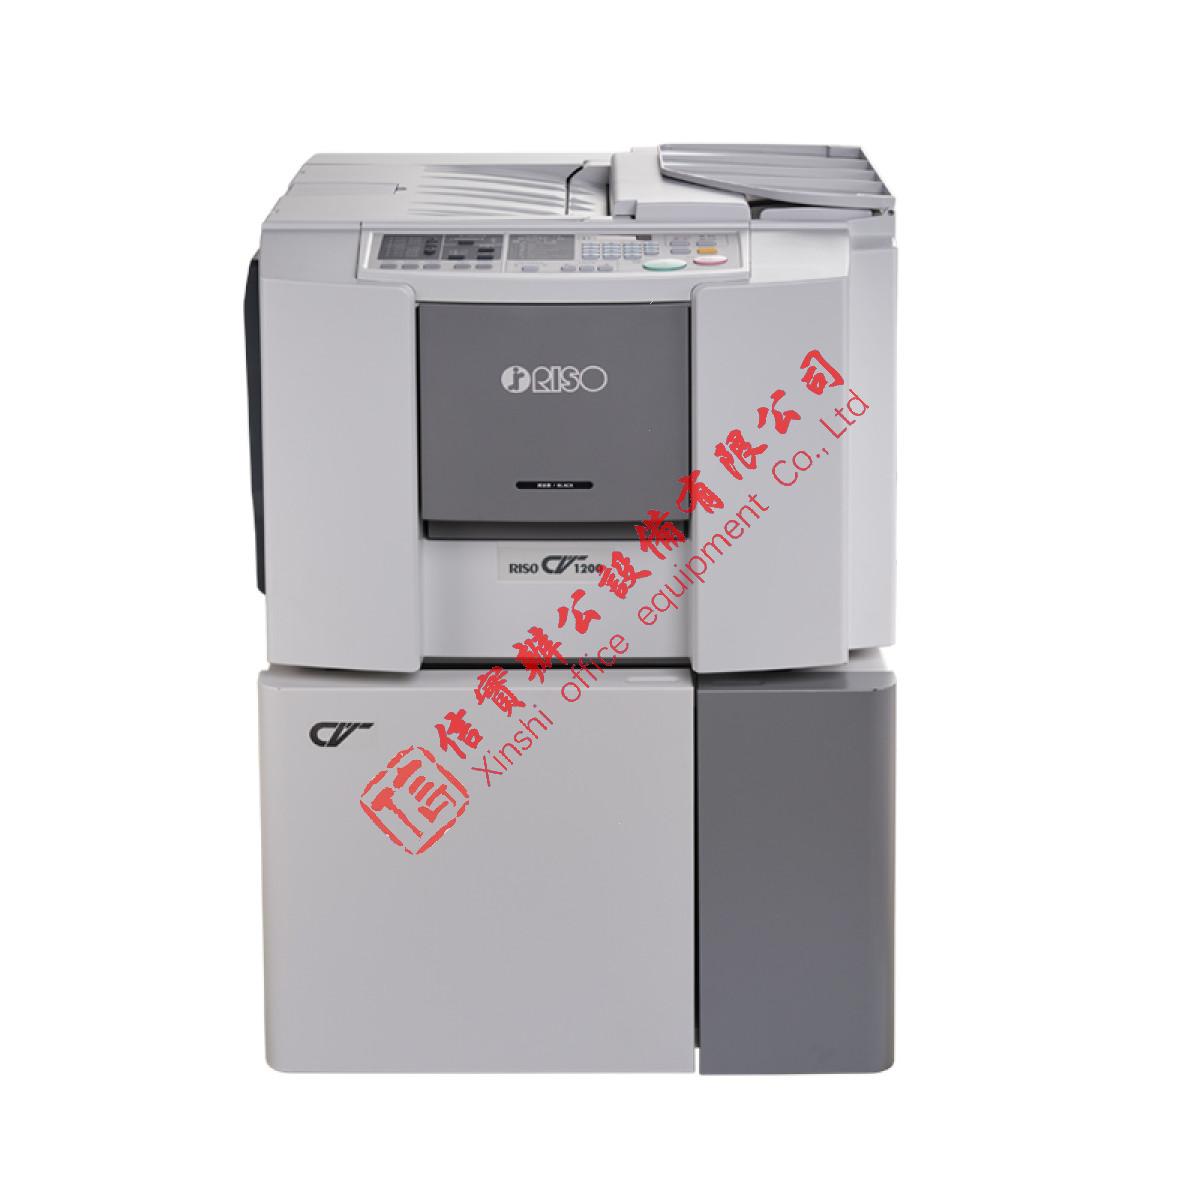 理想（RISO）理想 RISO CV1200C 一体化速印机(此产品不包含耗材，含底台)